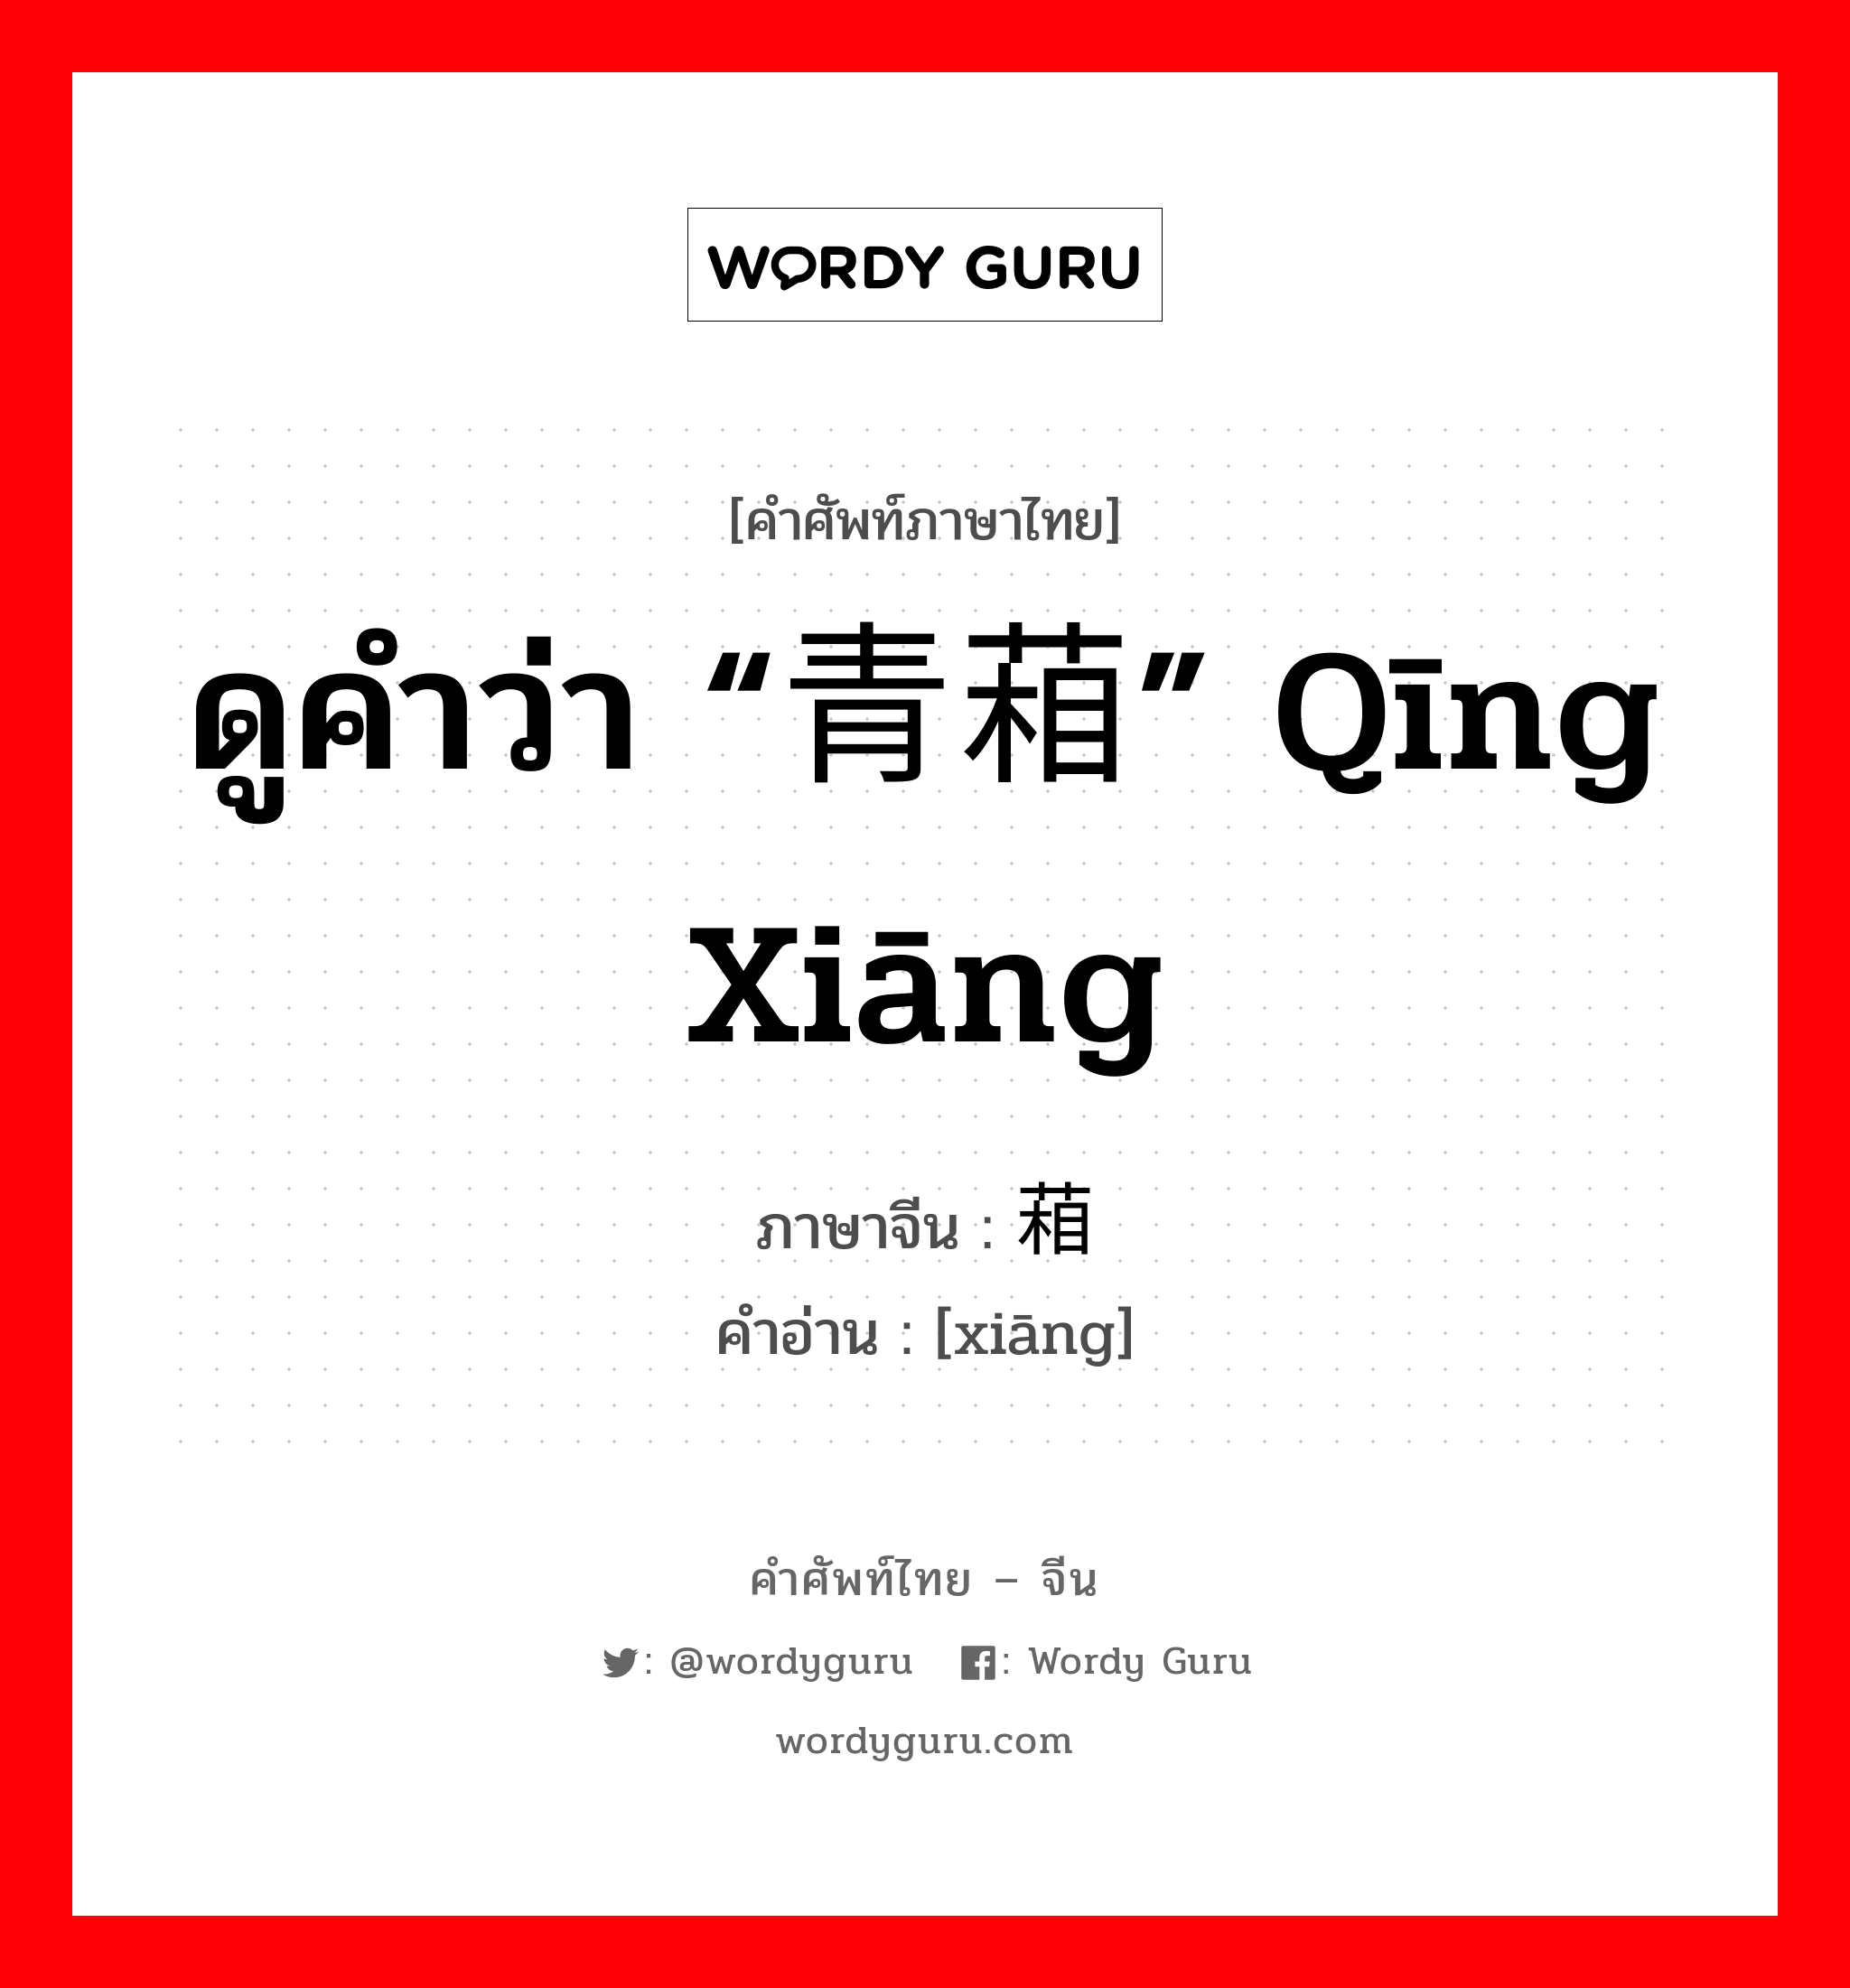 ดูคำว่า “青葙” qīng xiāng ภาษาจีนคืออะไร, คำศัพท์ภาษาไทย - จีน ดูคำว่า “青葙” qīng xiāng ภาษาจีน 葙 คำอ่าน [xiāng]